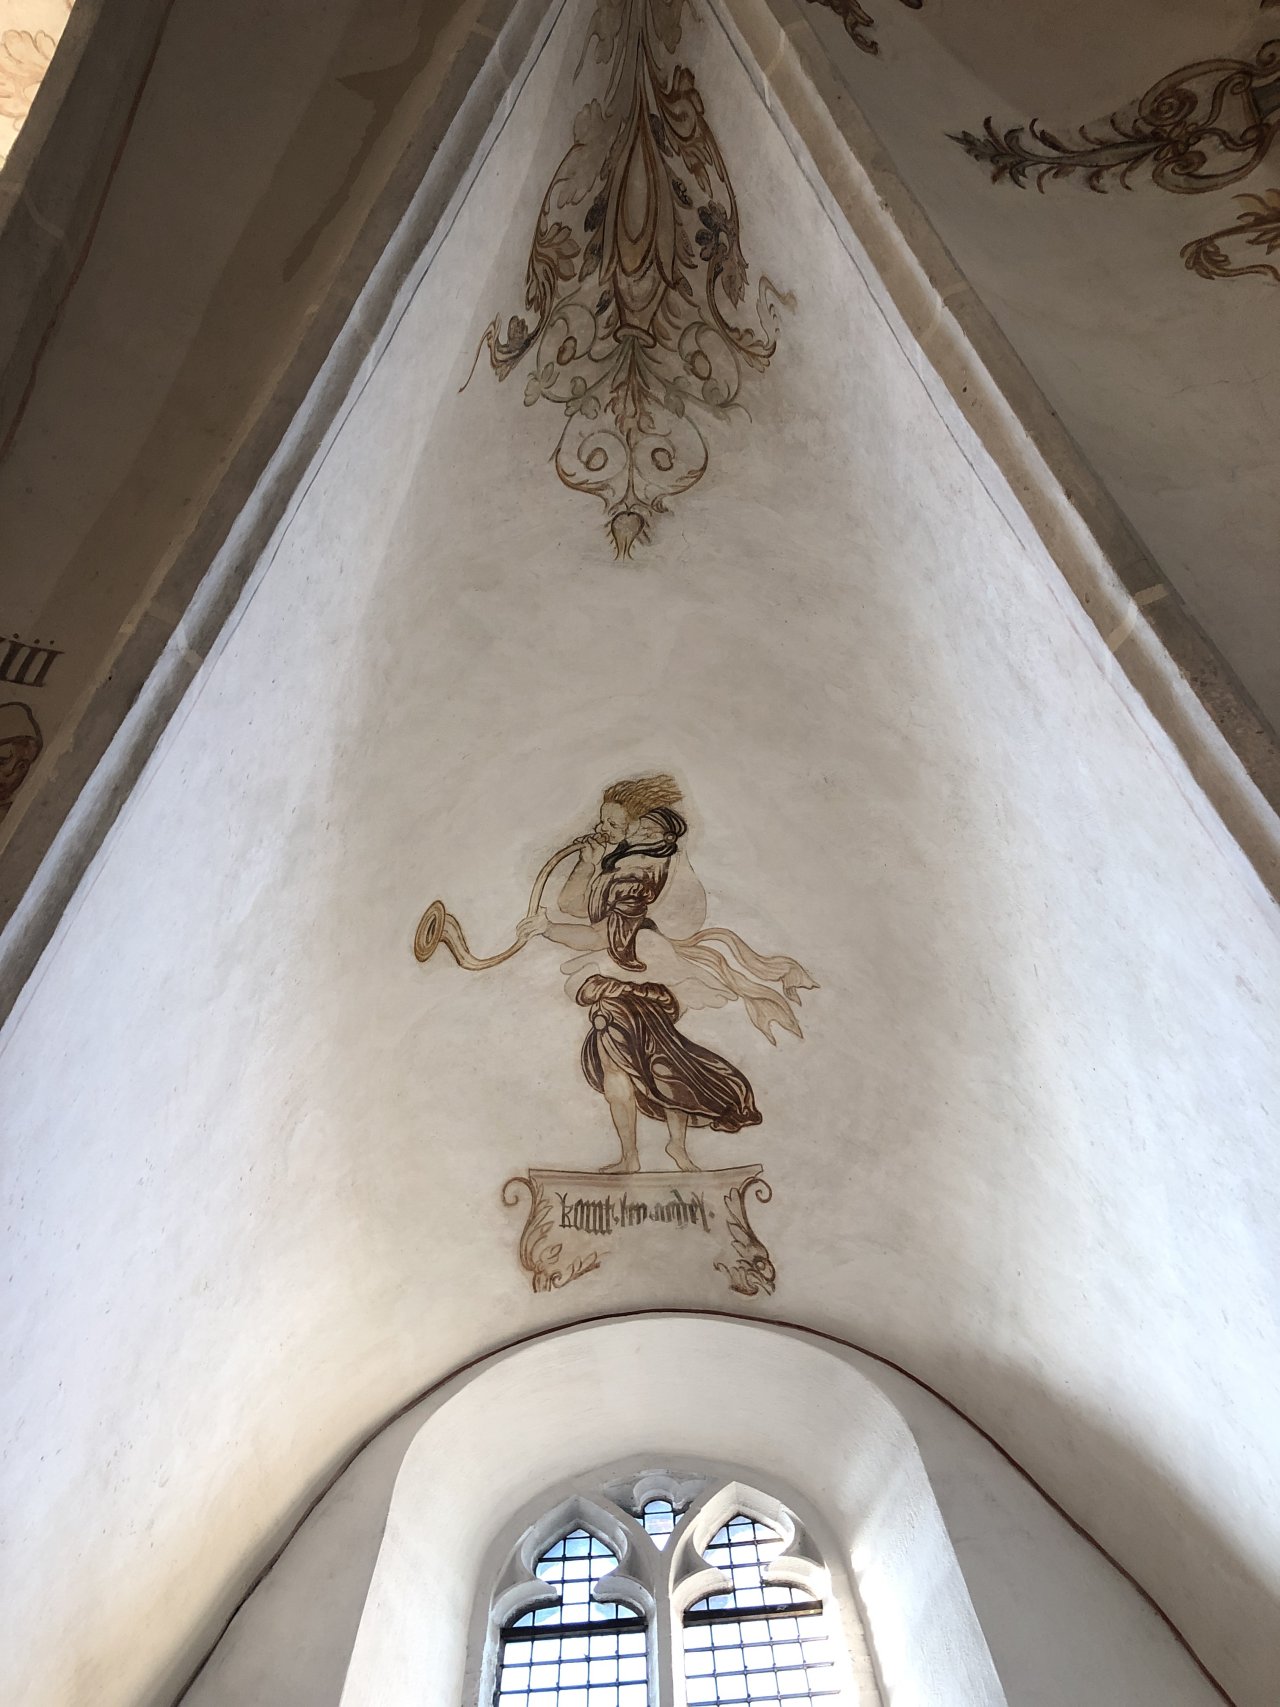 Restauratie stukadoors kerk kalk zand middeleeuwen middeleeuws schildering conserveren stabiliseren injecteren verlijmen repareren